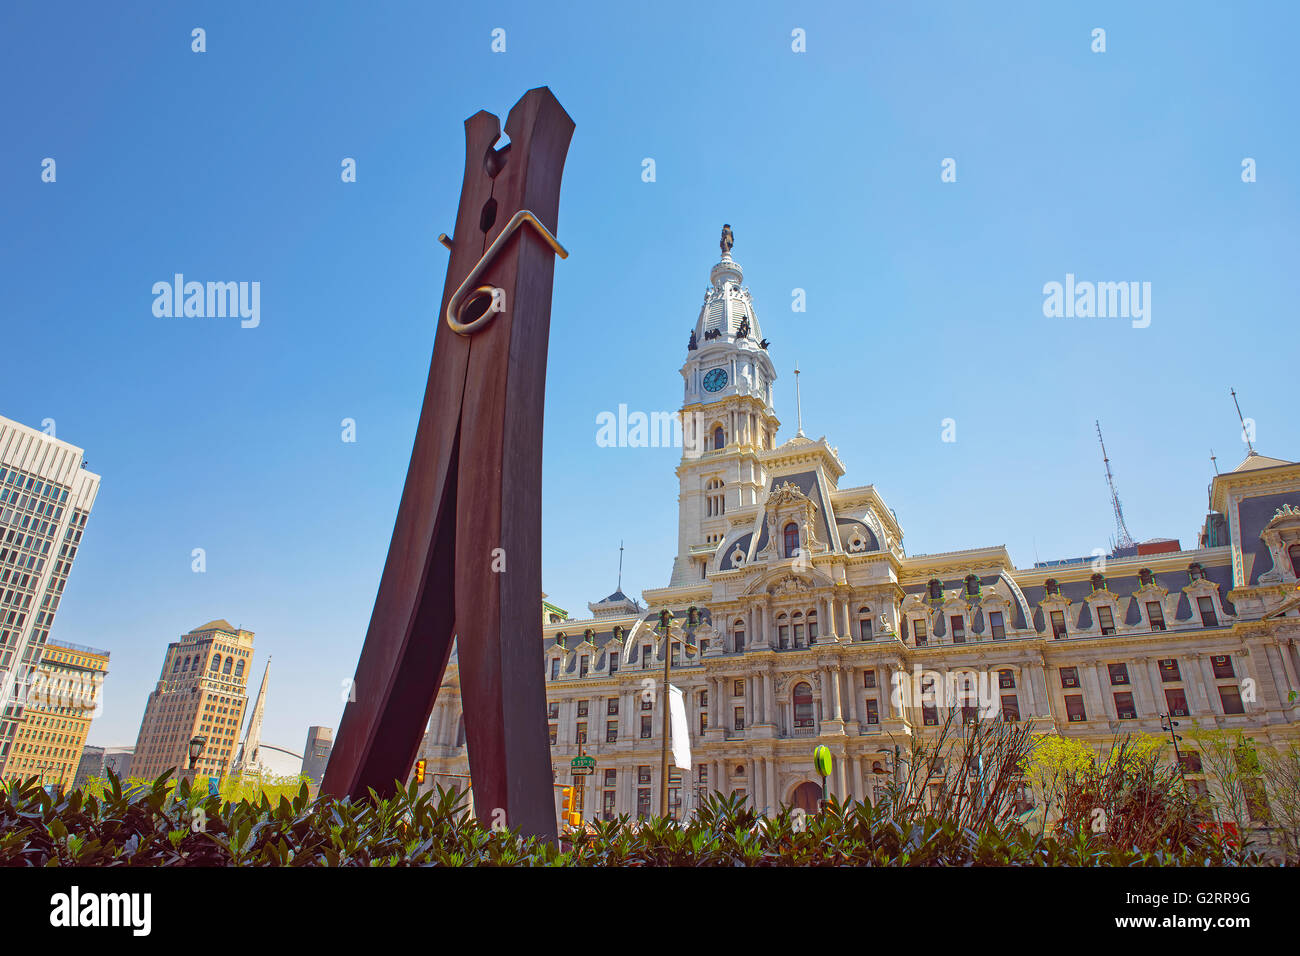 Philadelphie, USA - 4 mai 2015 : sculpture Clothespin près de Philadelphia City Hall. L'Hôtel de ville historique de Philadelphie. New York, USA. Banque D'Images